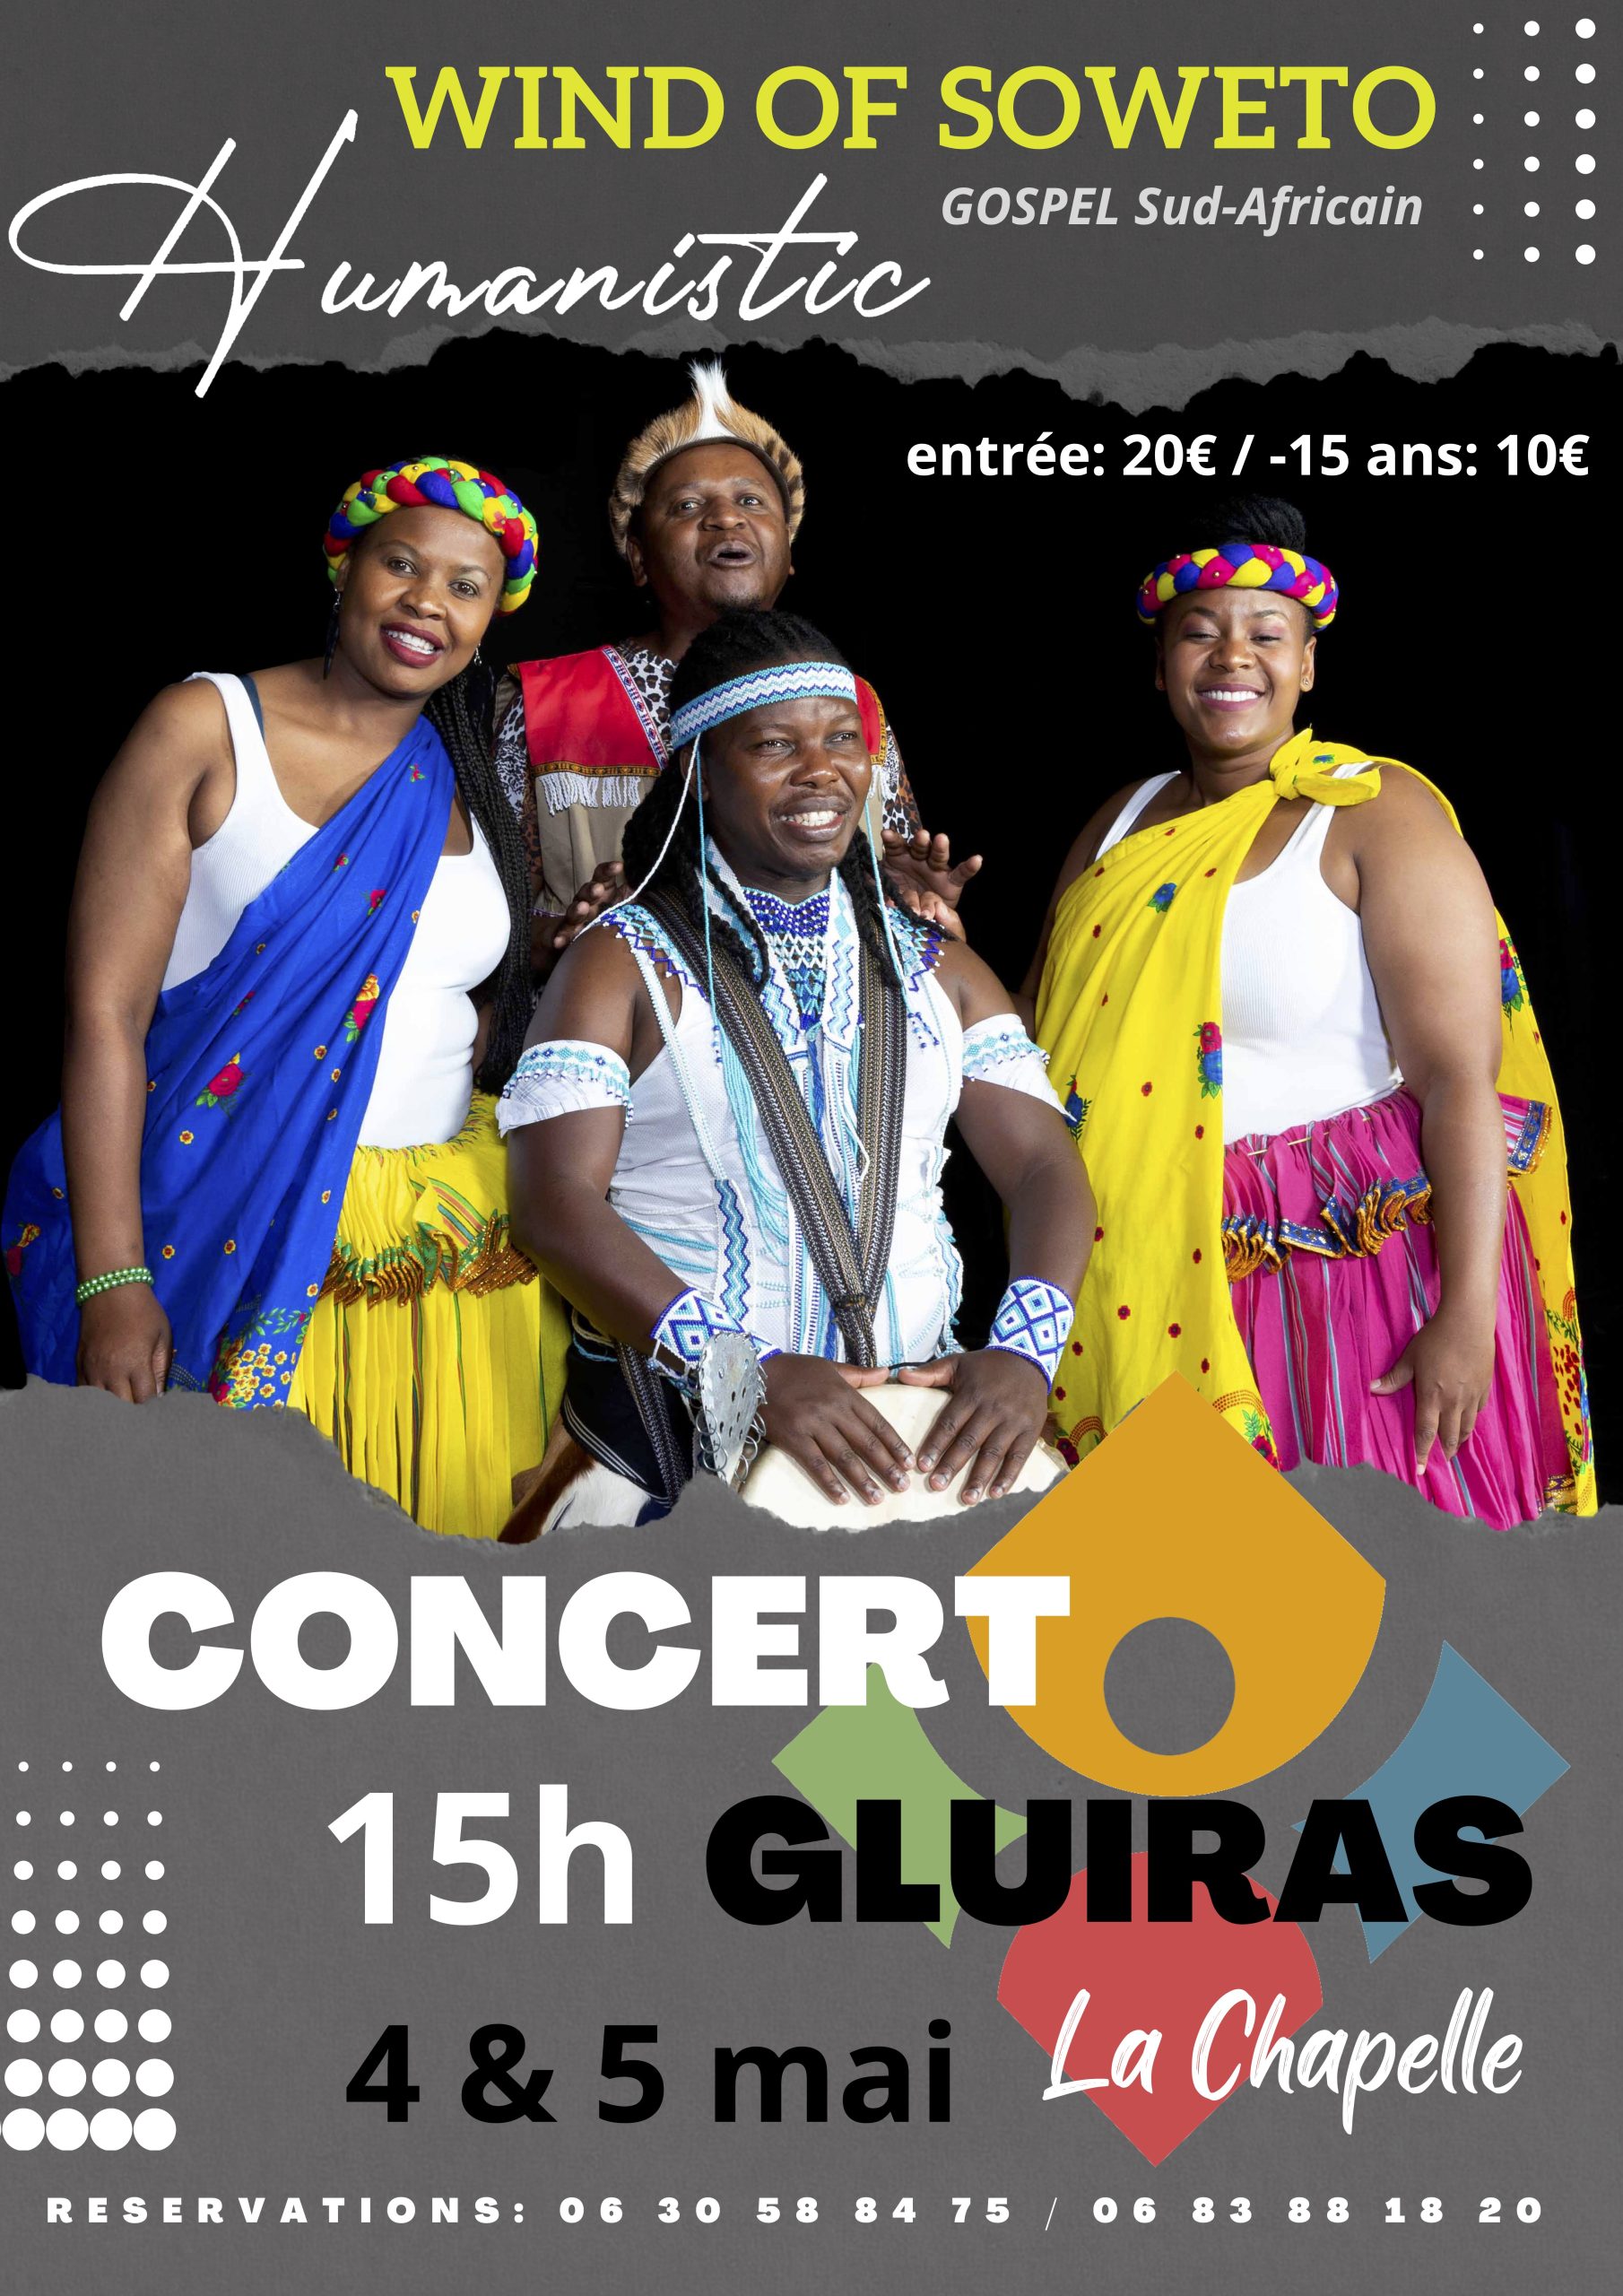 Rendez-vous futés ! : Concerts du groupe de Gospel : Humanistic Wind of Soweto